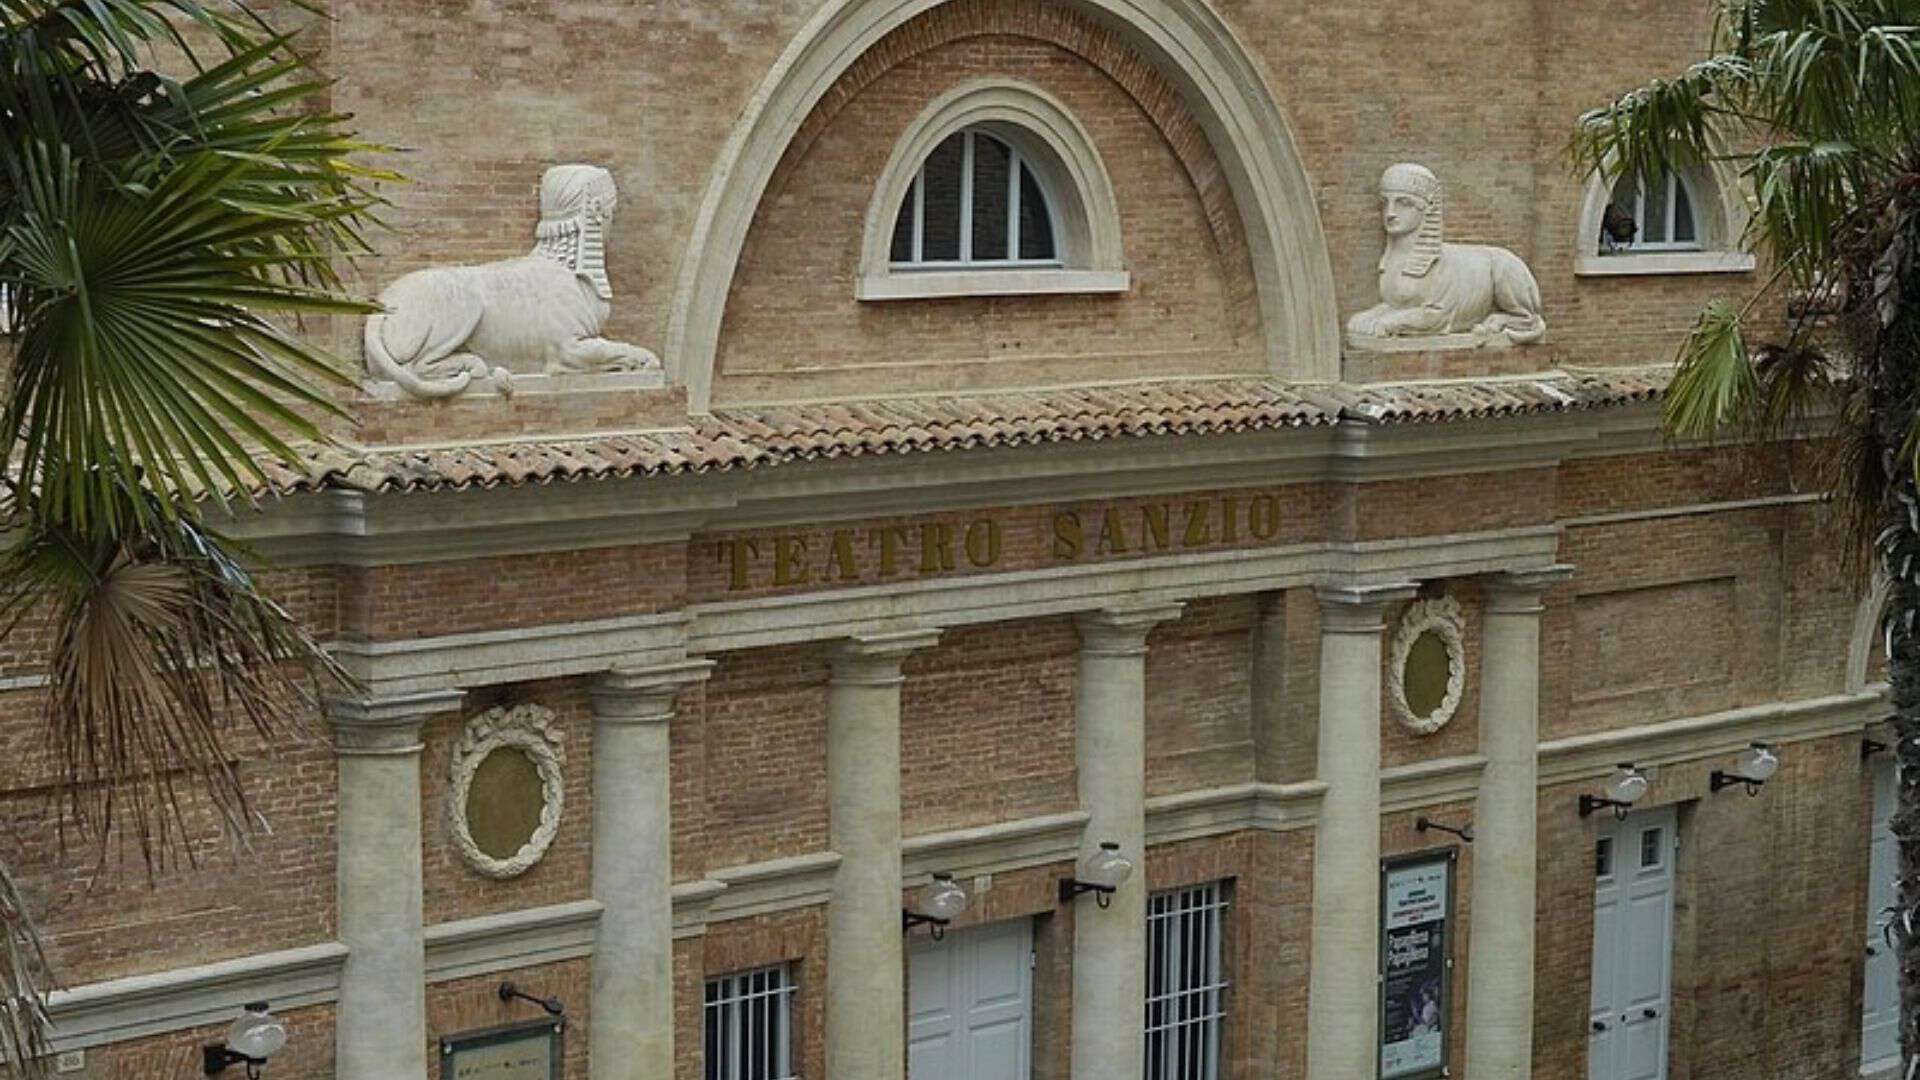 La facciata del teatro Sanzio